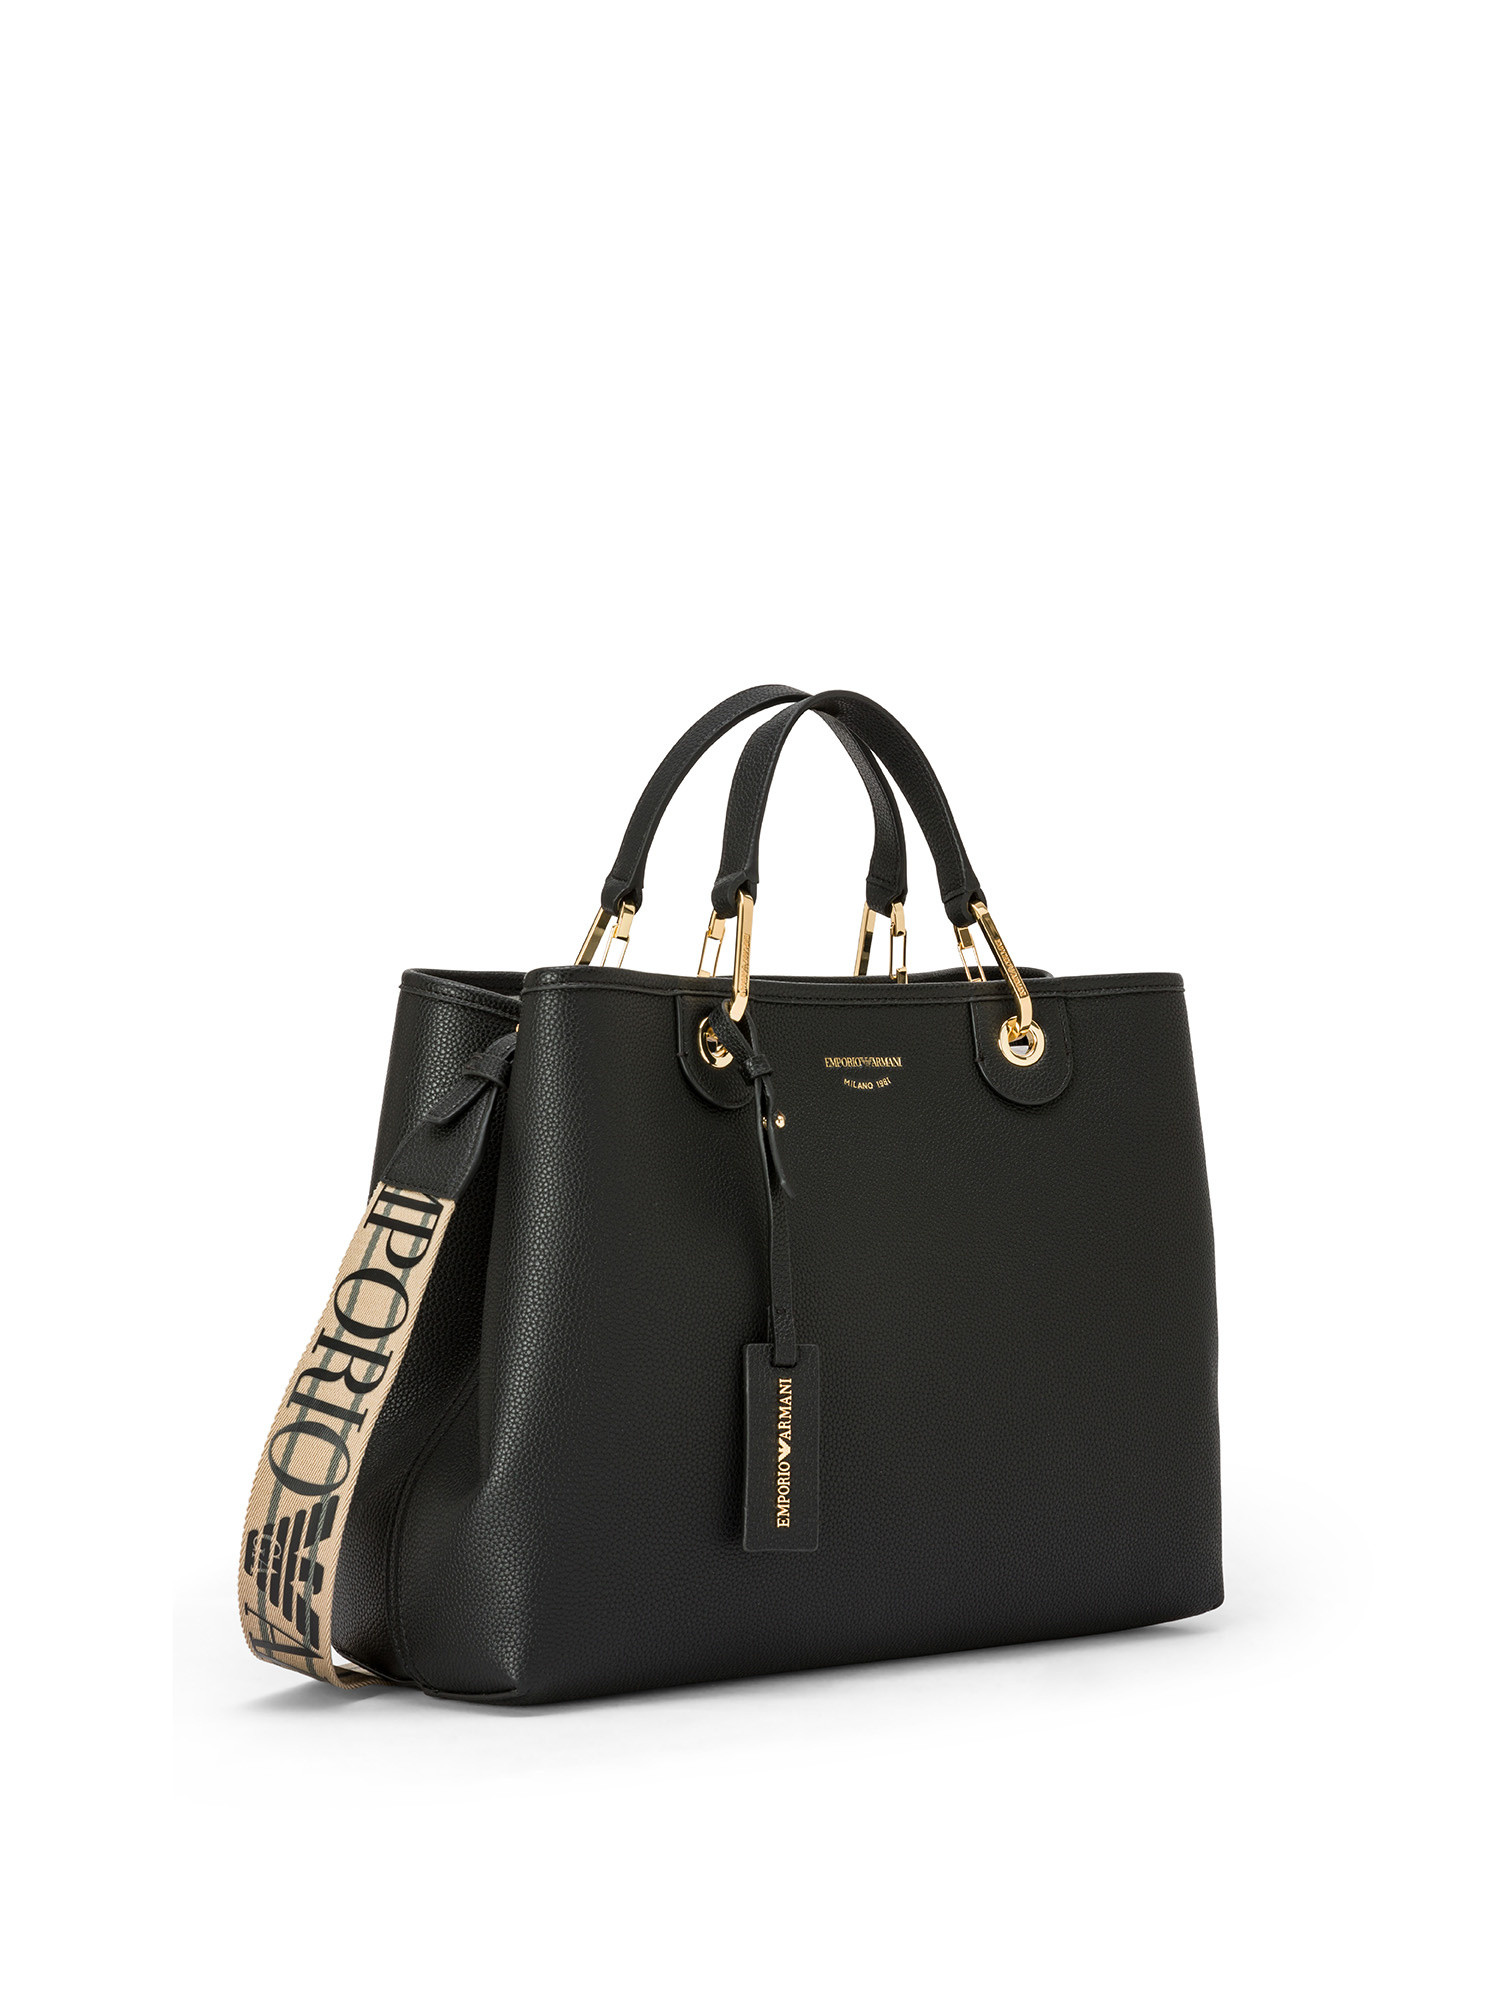 Emporio Armani - Shopper bag media stampa cervo, Nero, large image number 1